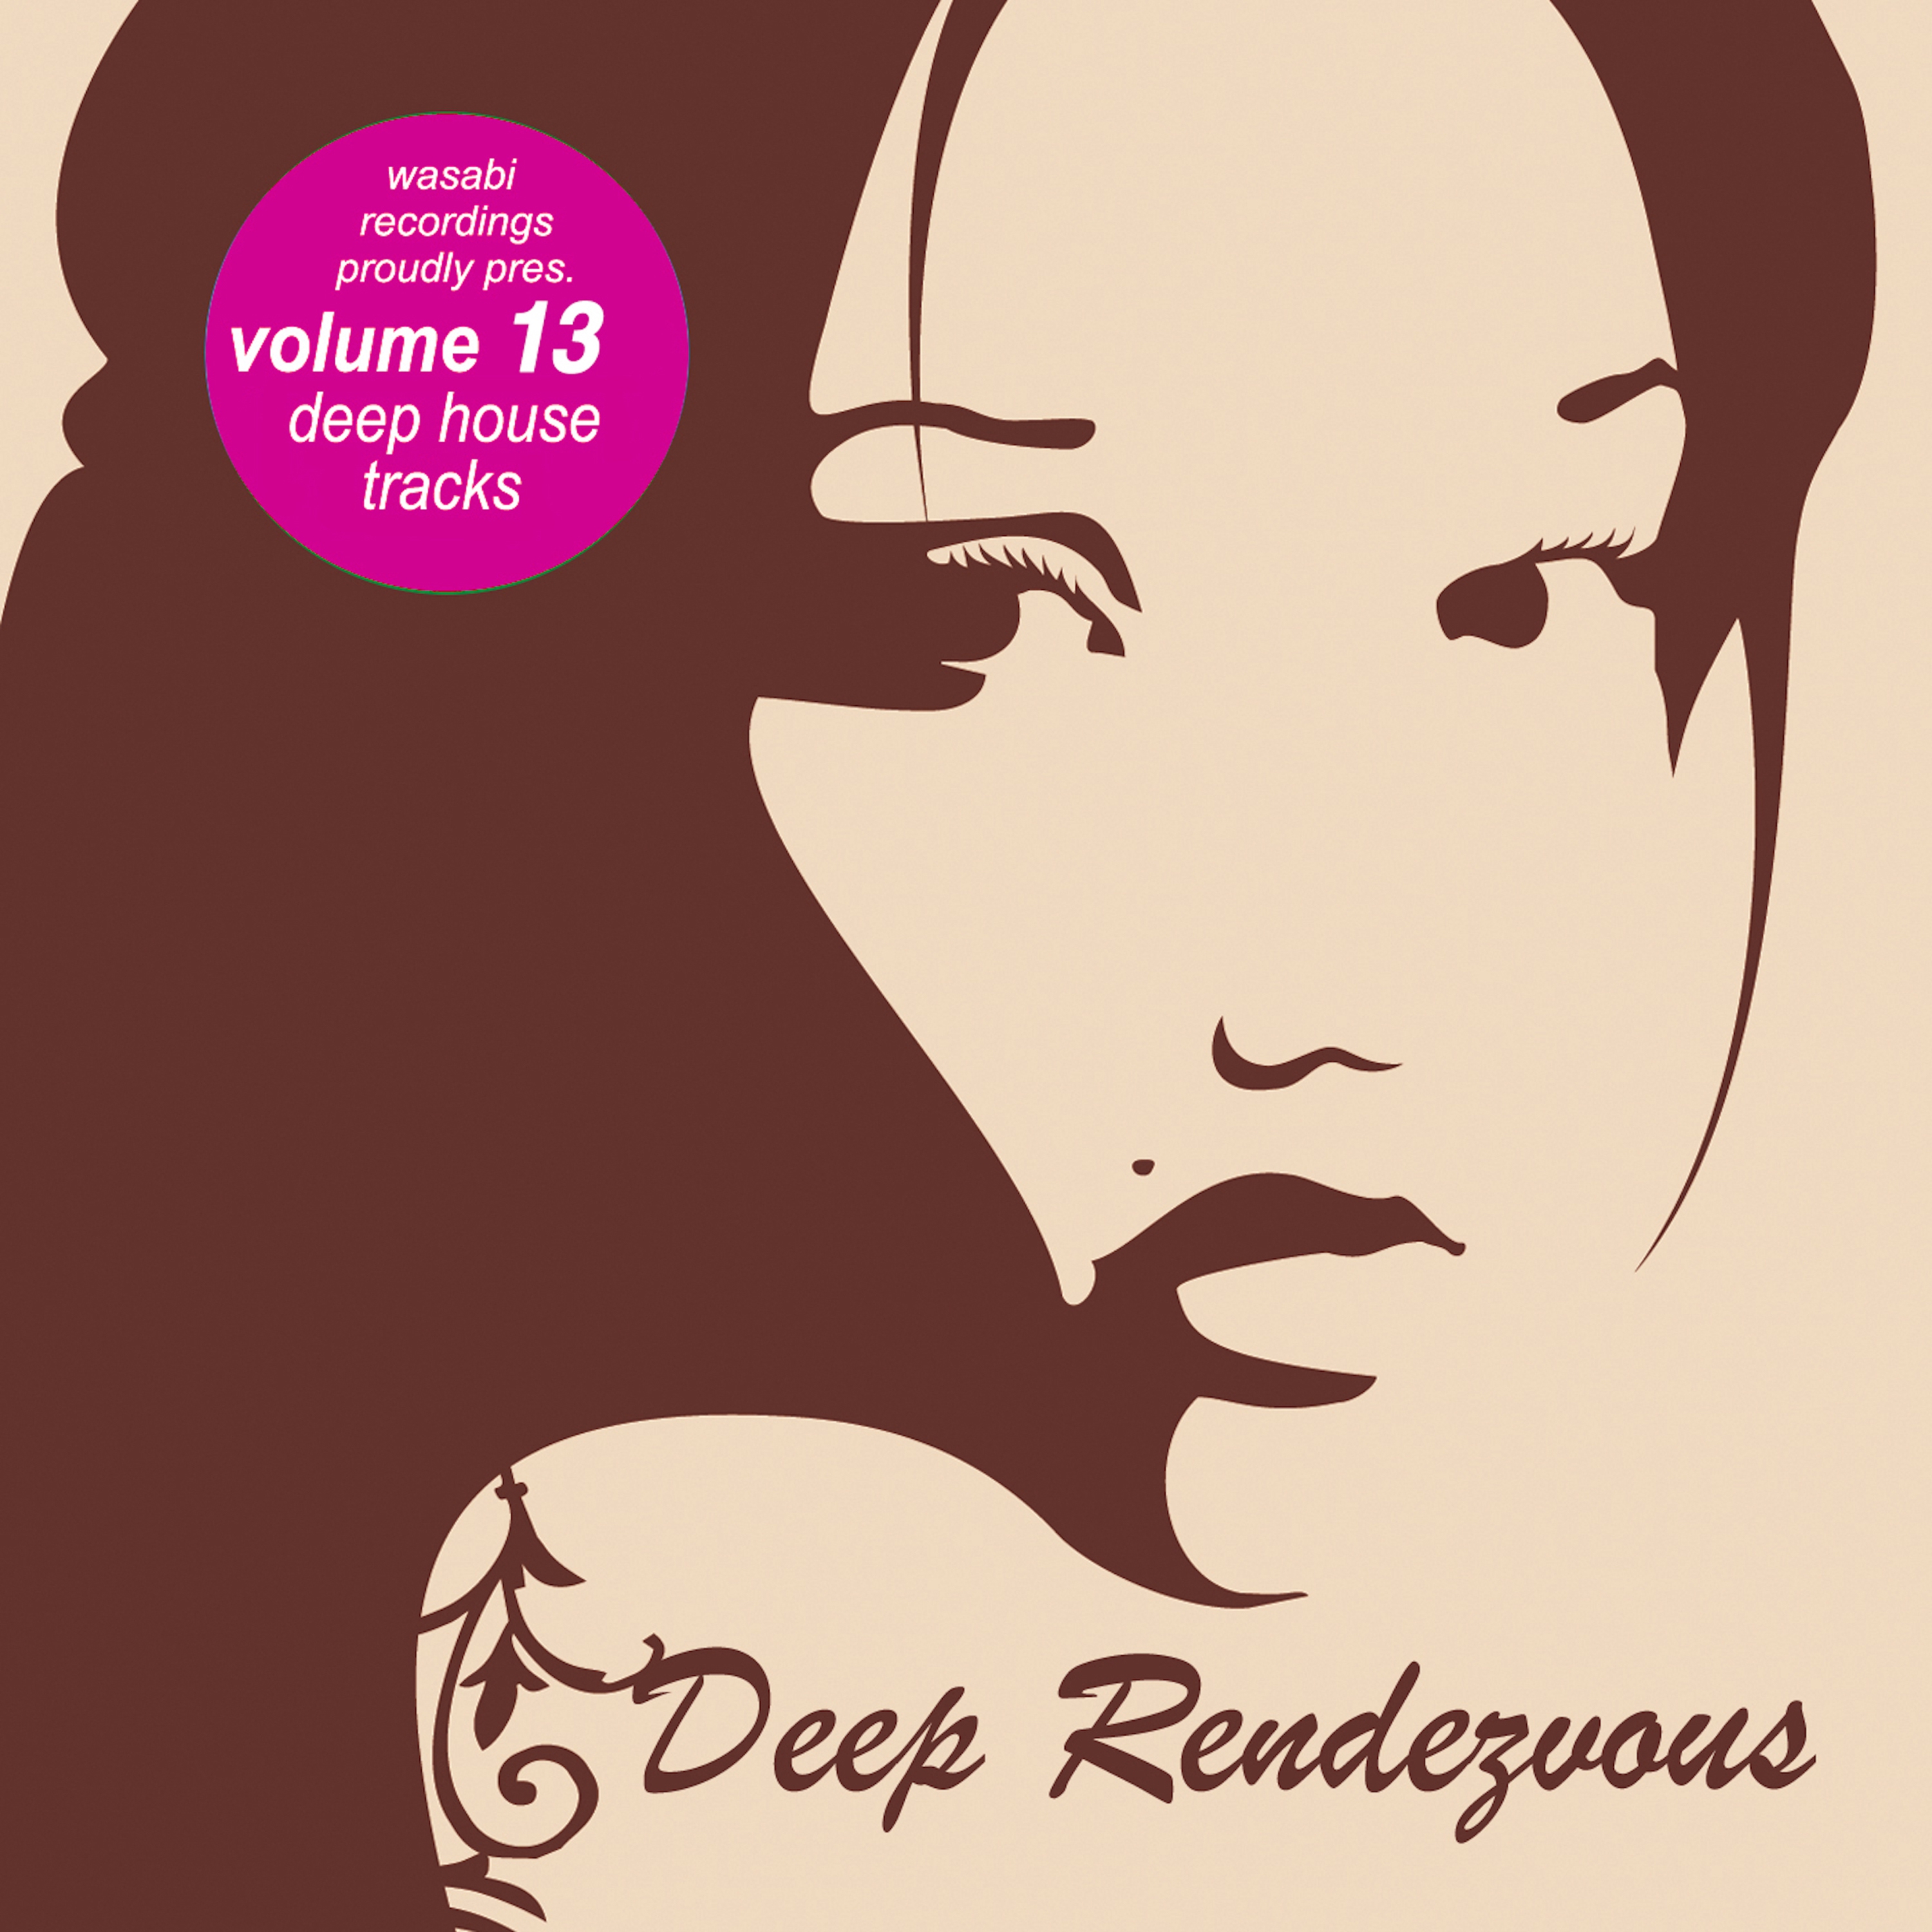 Deep Rendevouz, Vol. 13